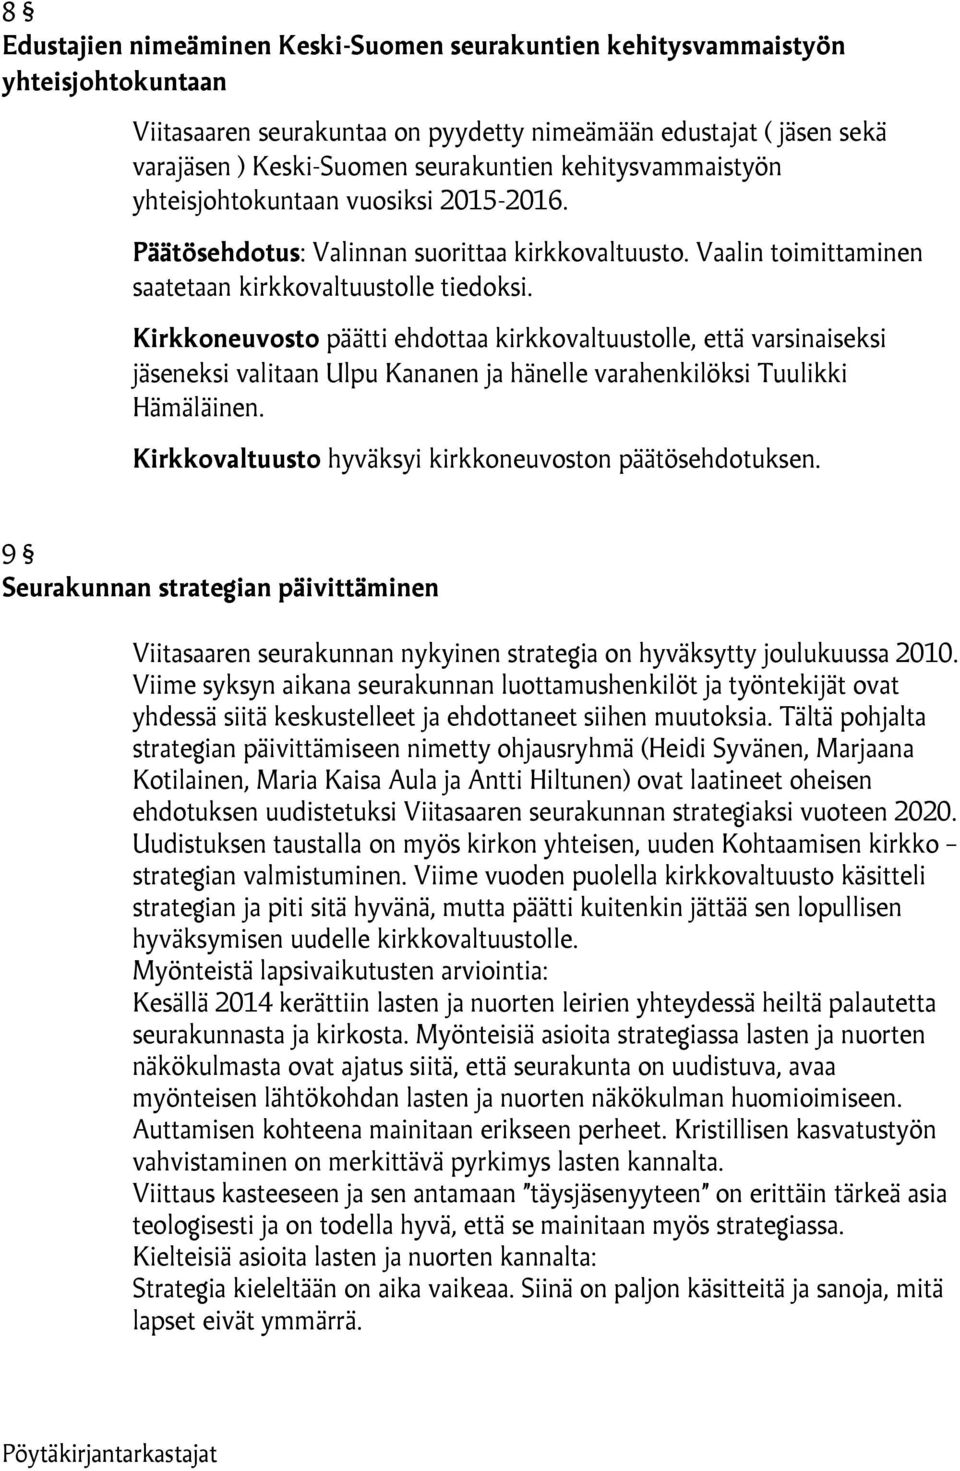 Kirkkoneuvosto päätti ehdottaa kirkkovaltuustolle, että varsinaiseksi jäseneksi valitaan Ulpu Kananen ja hänelle varahenkilöksi Tuulikki Hämäläinen.